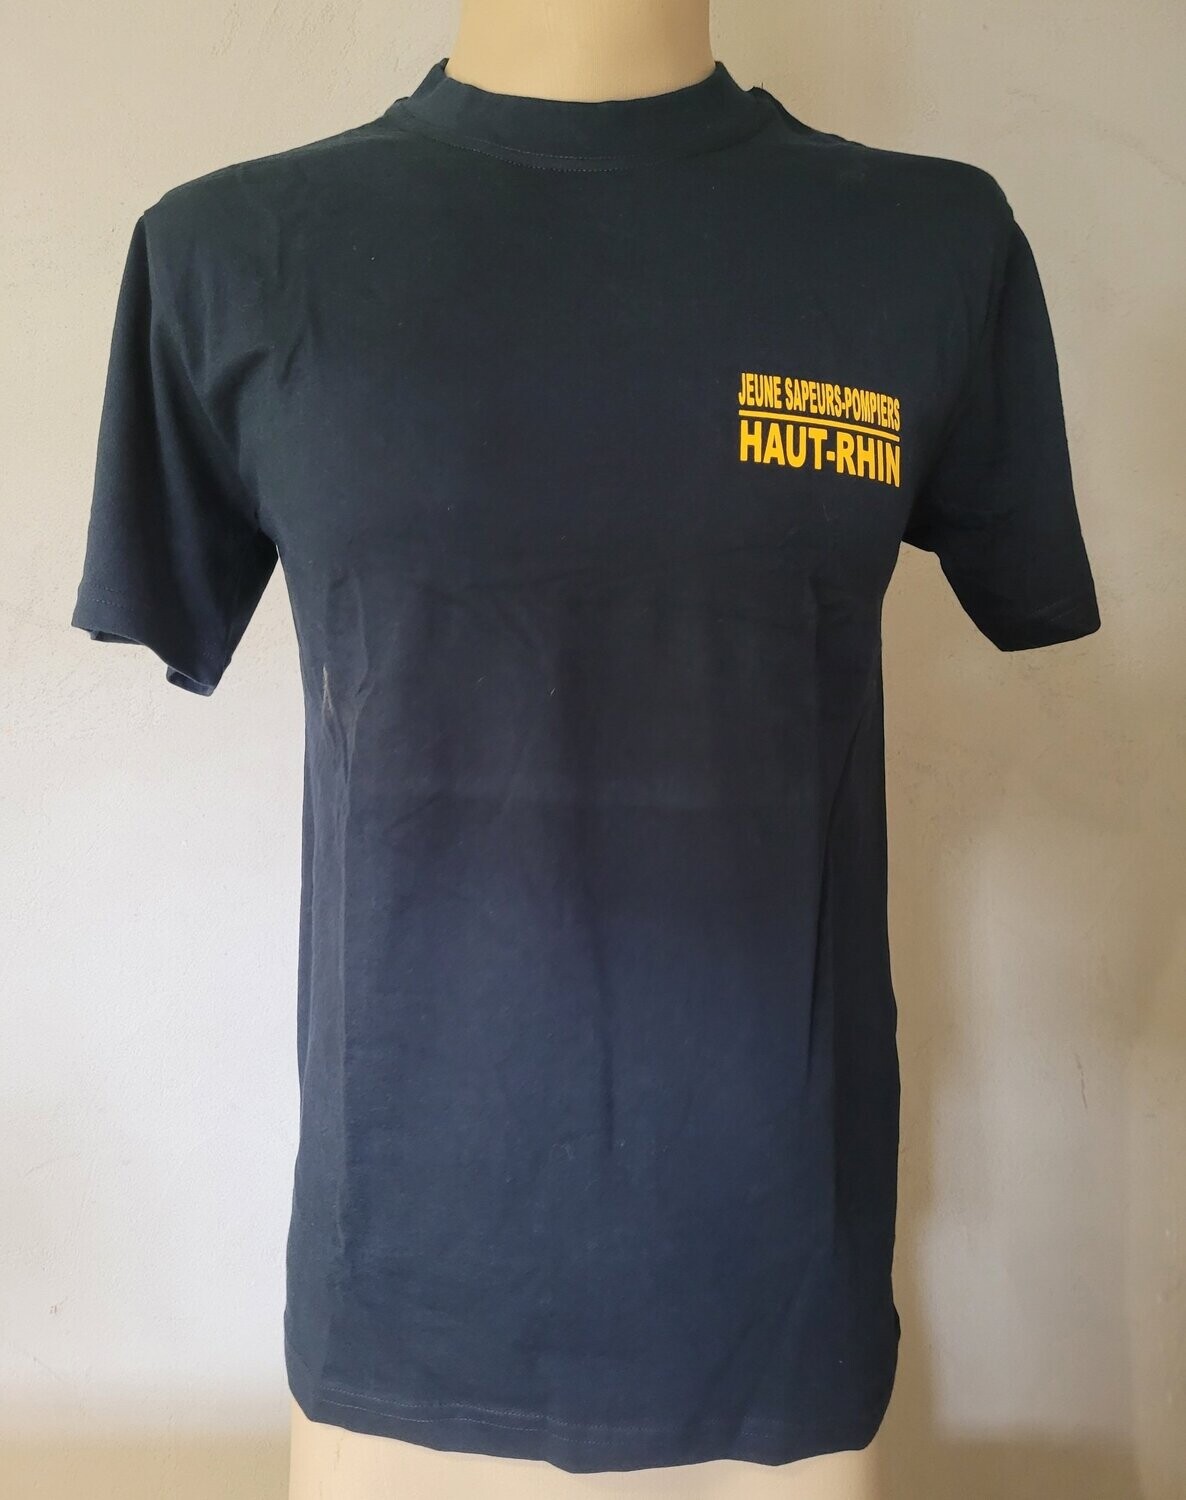 T-shirt jeunes sapeurs-pompiers JSP Haut-Rhin 100% coton BG-SAFETY